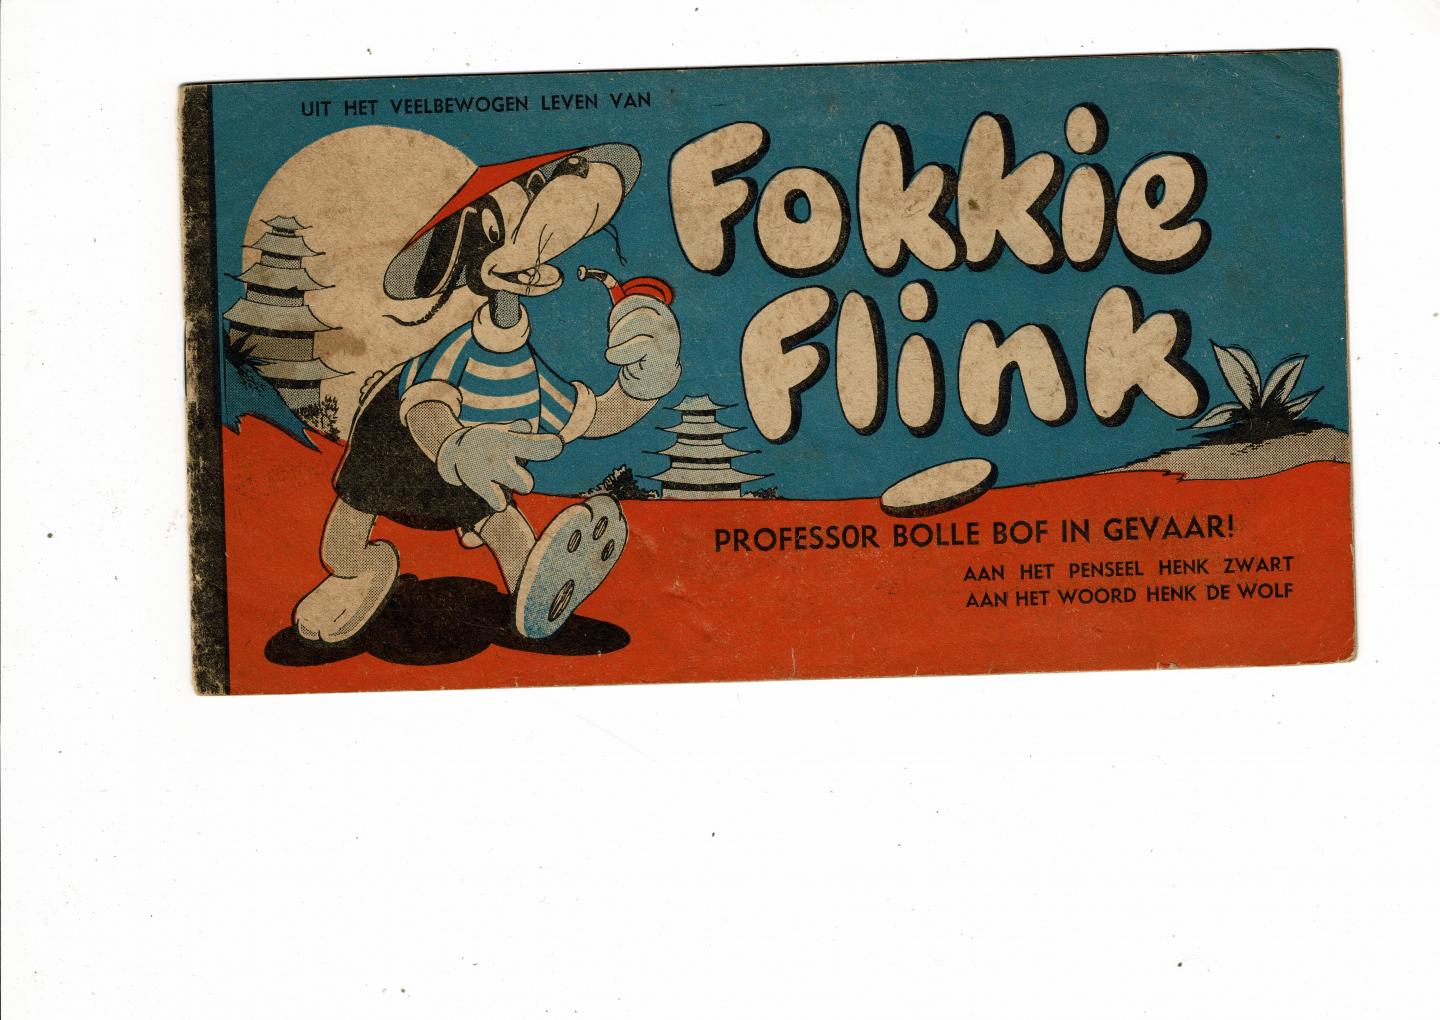 Zwart,Henk - uit het veelbewogen leven van Fokkie Flink professor bolle bof in gevaar!